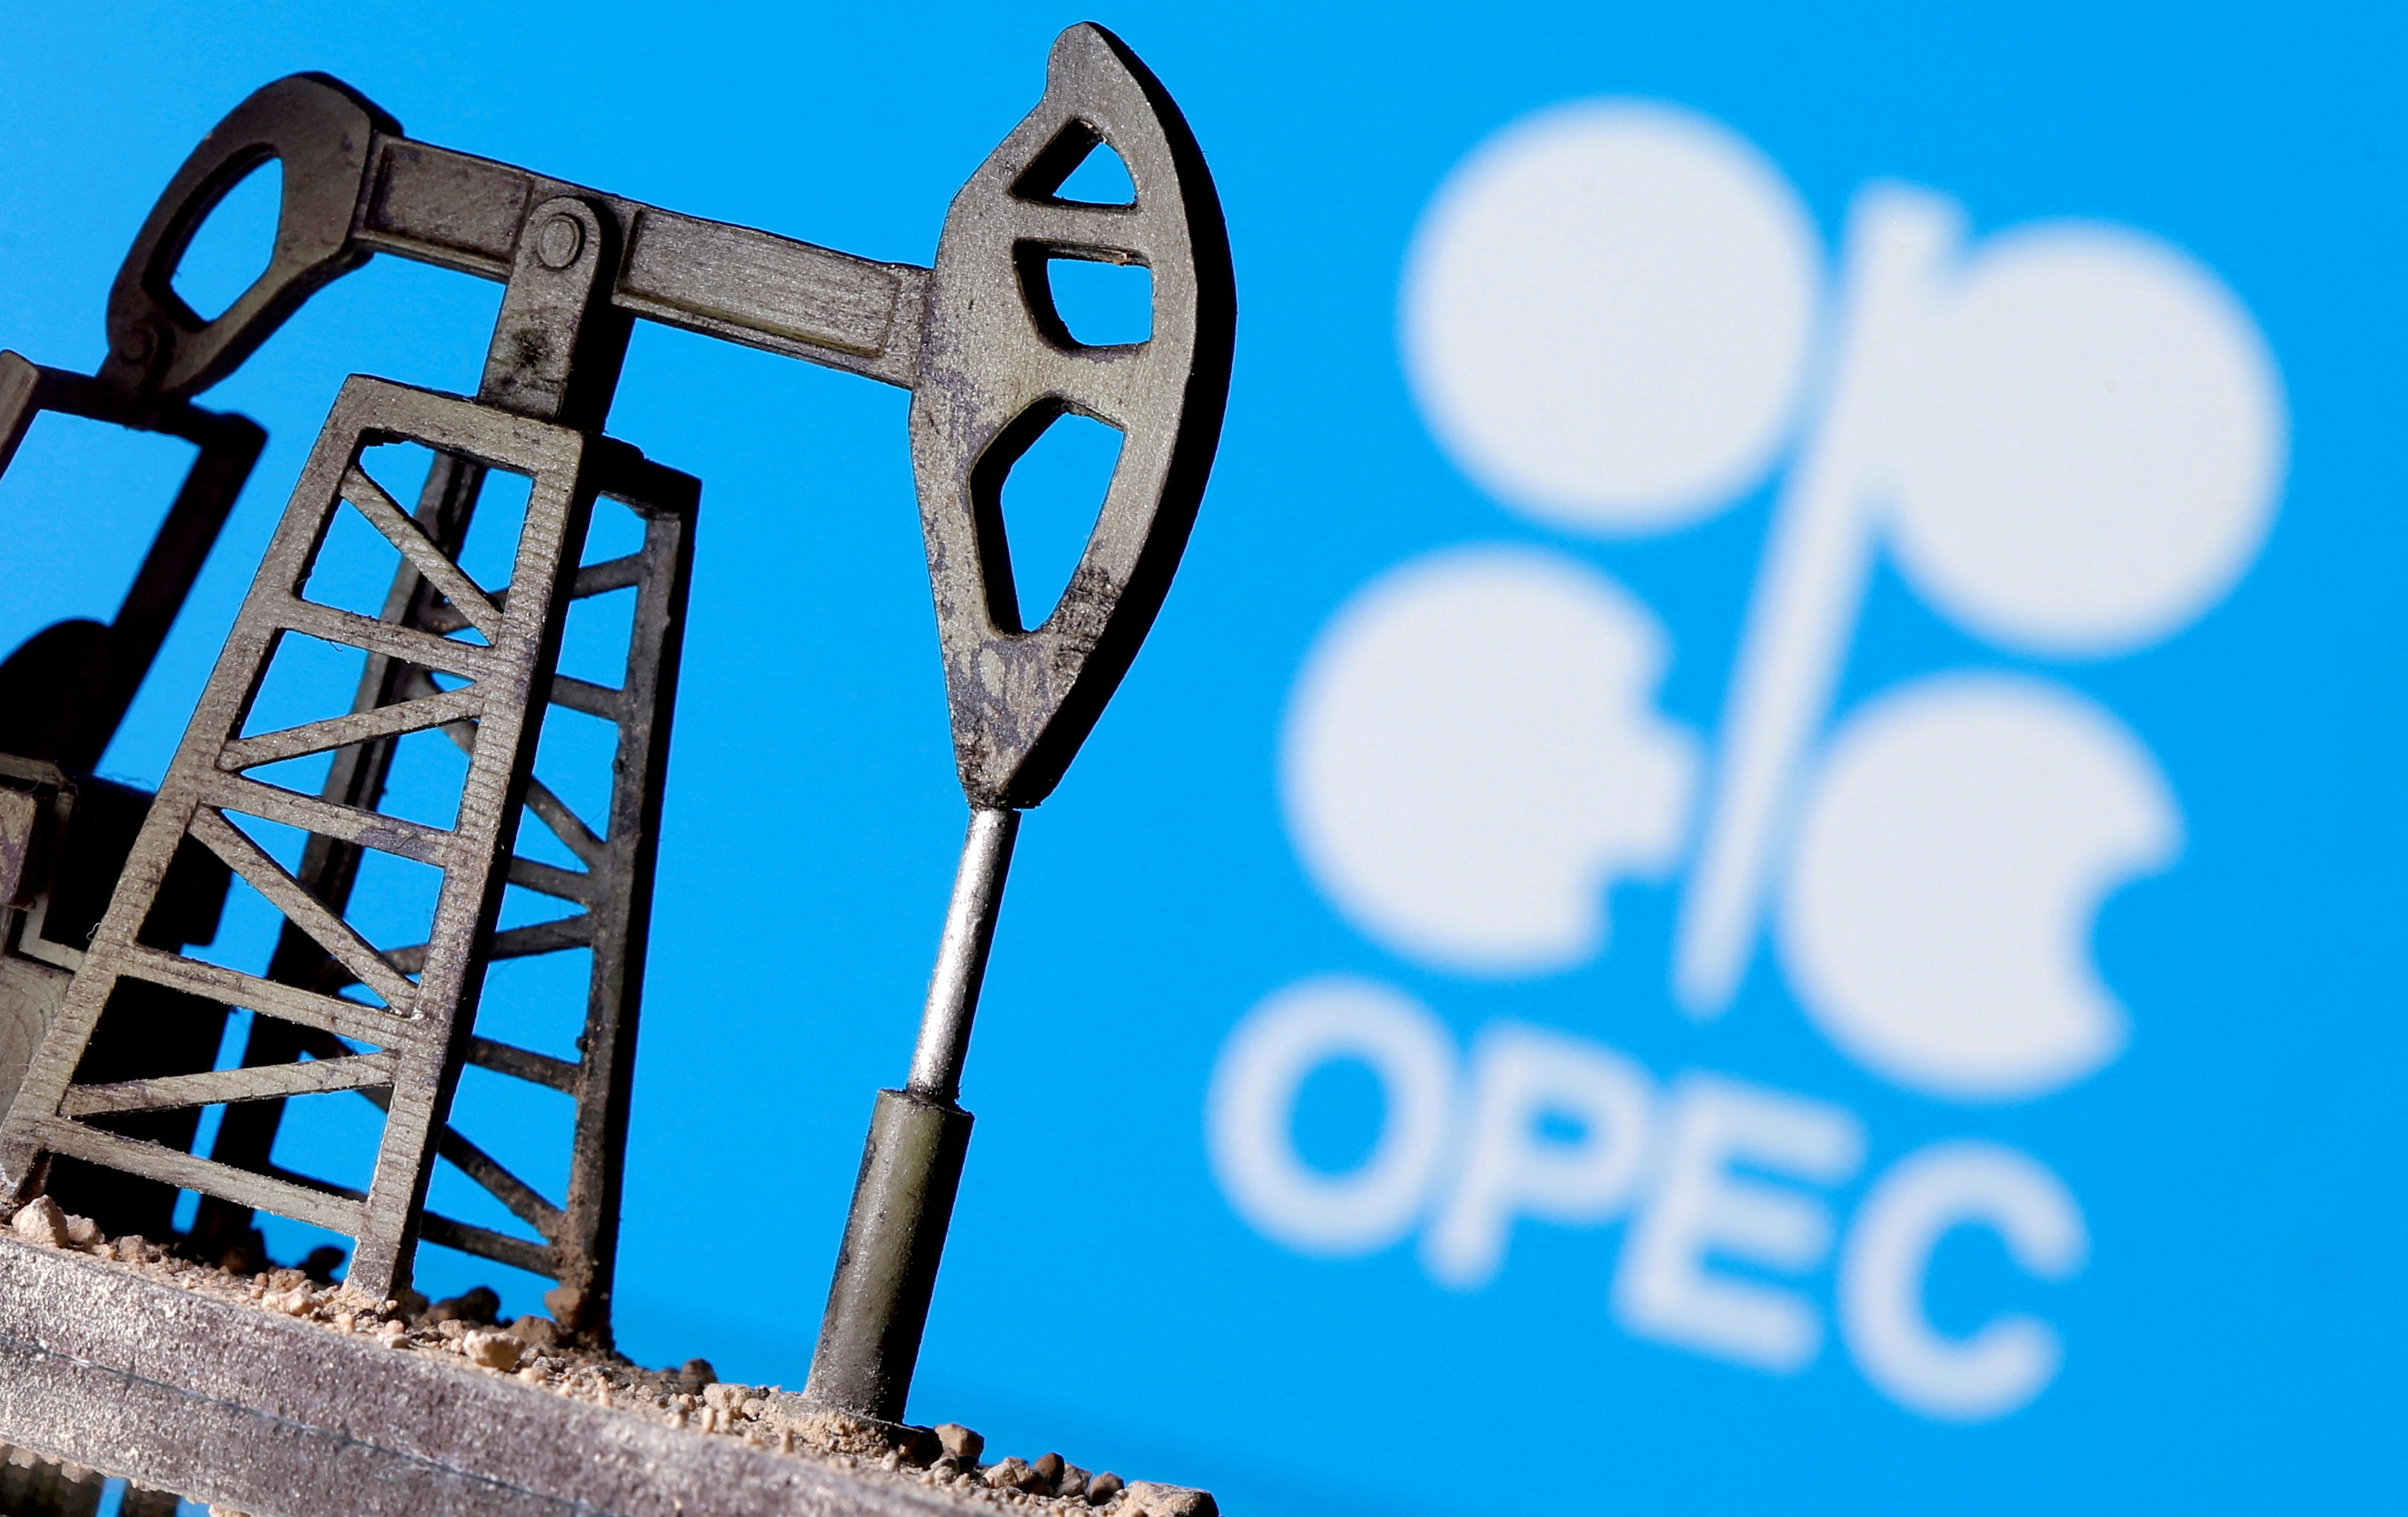 Giắc bơm dầu được in 3D phía trước logo OPEC trong hình minh họa này